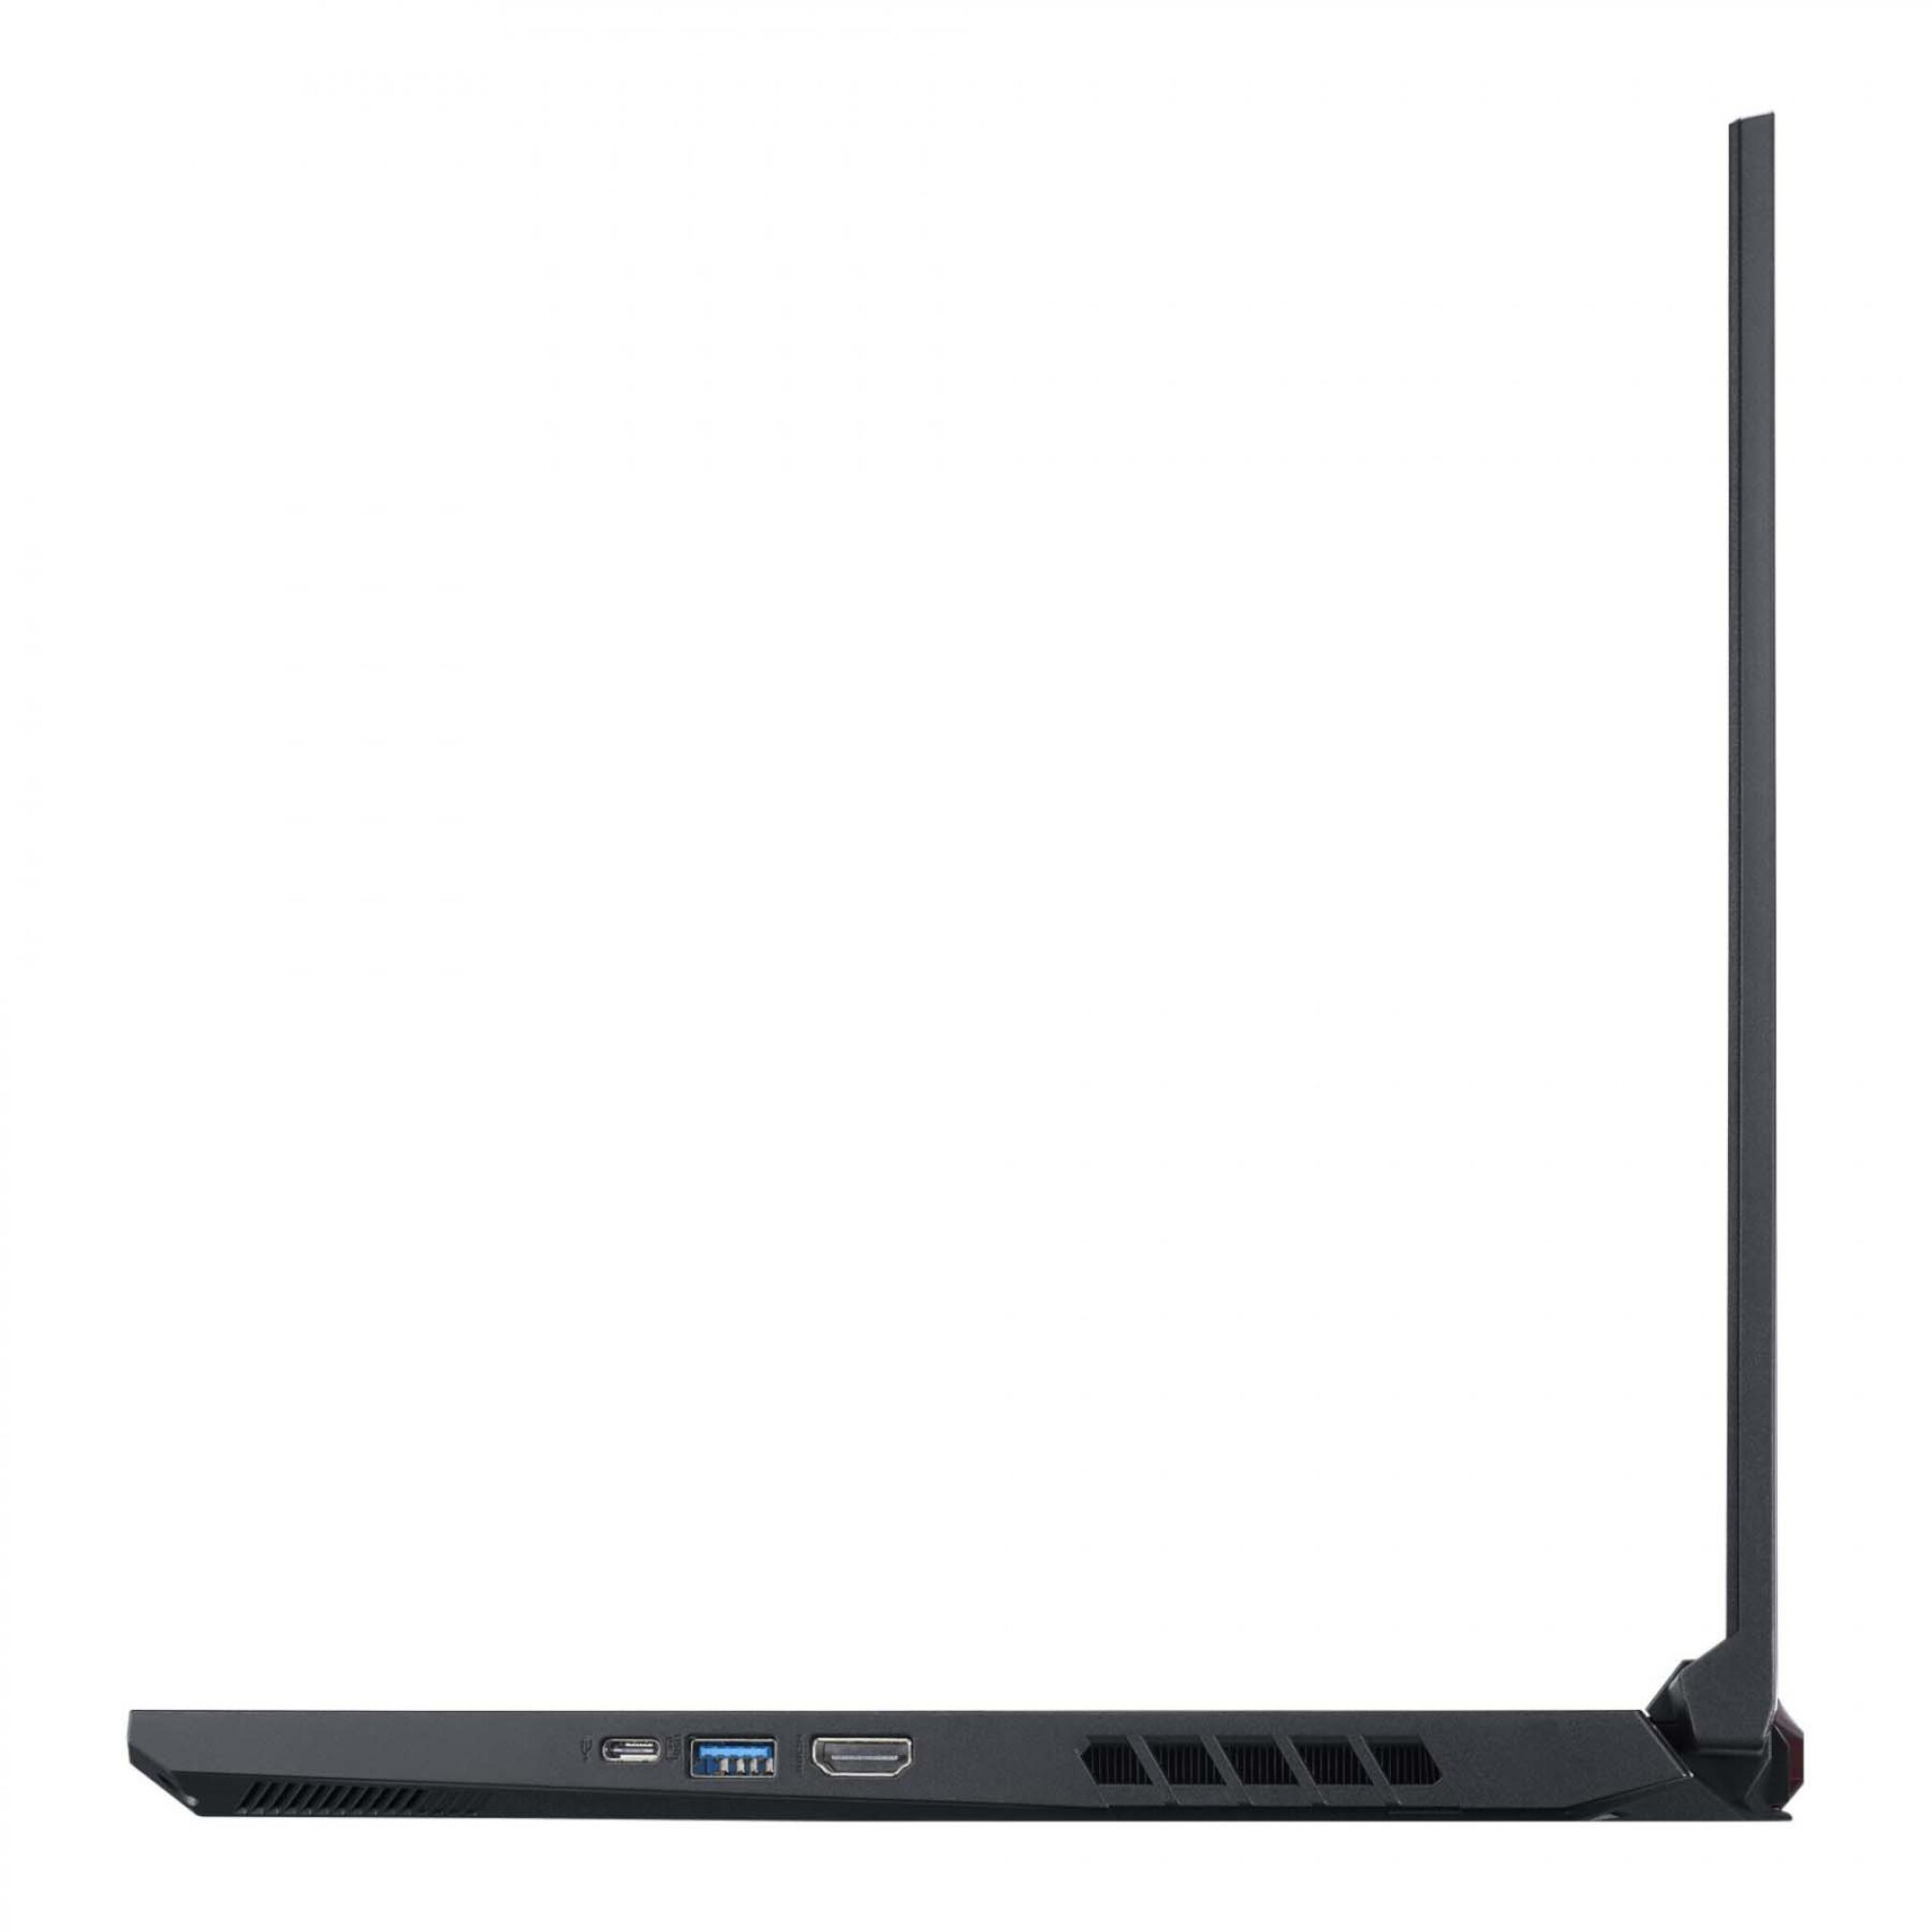  لپ تاپ ایسر نیترو 5 مدل AN515-45-R59T | لاکچری لپ تاپ 